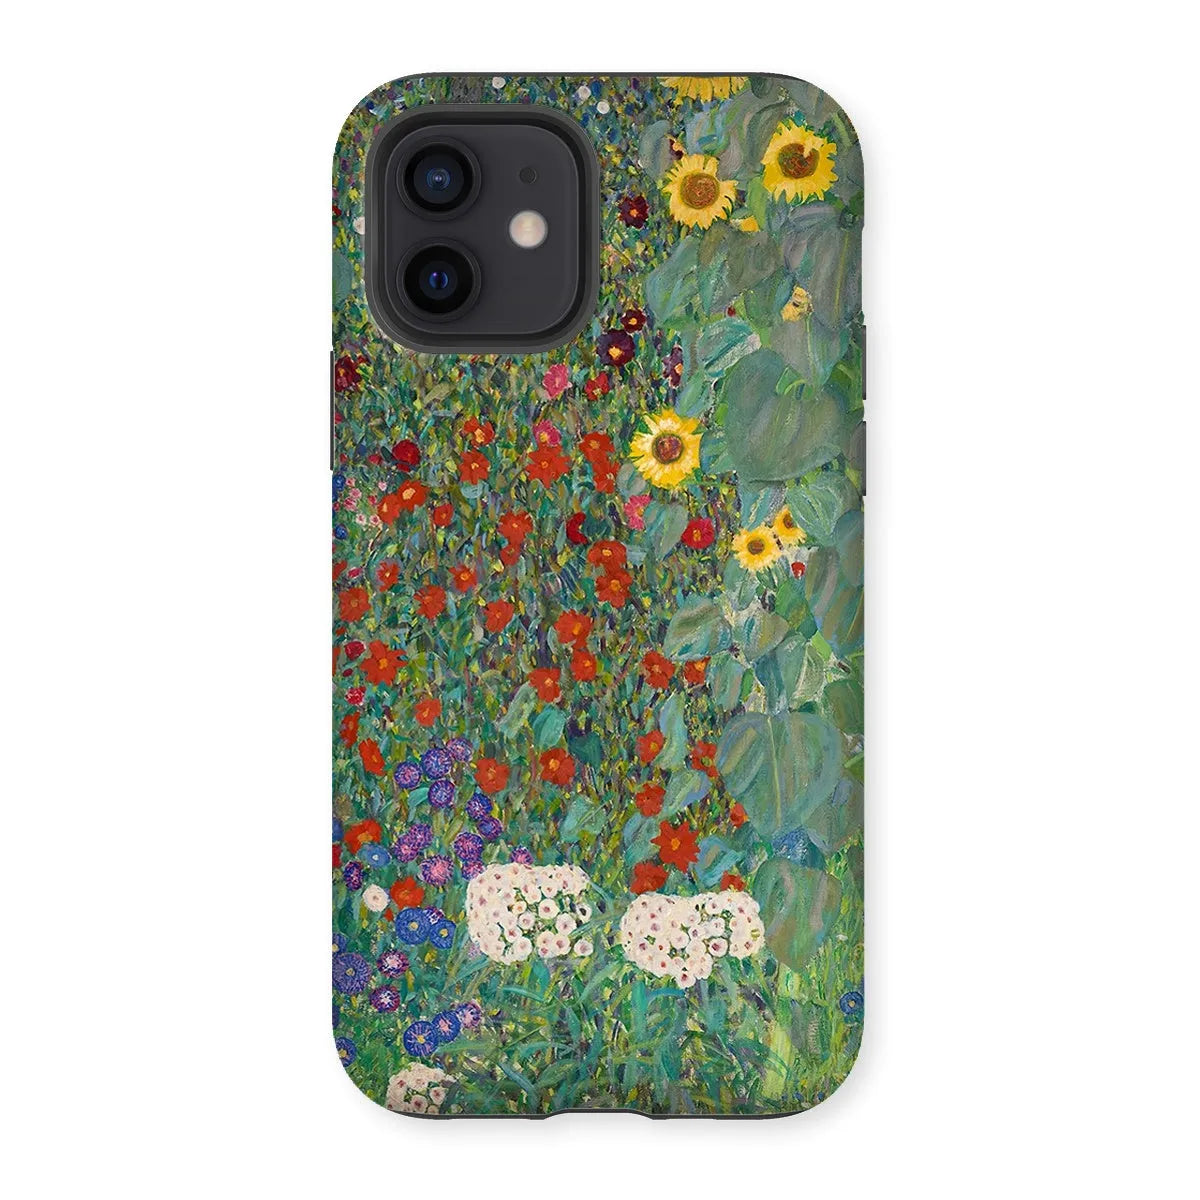 Farm Garden With Sunflowers Art Phone Case - Gustav Klimt - Iphone 12 / Matte - Mobile Phone Cases - Aesthetic Art